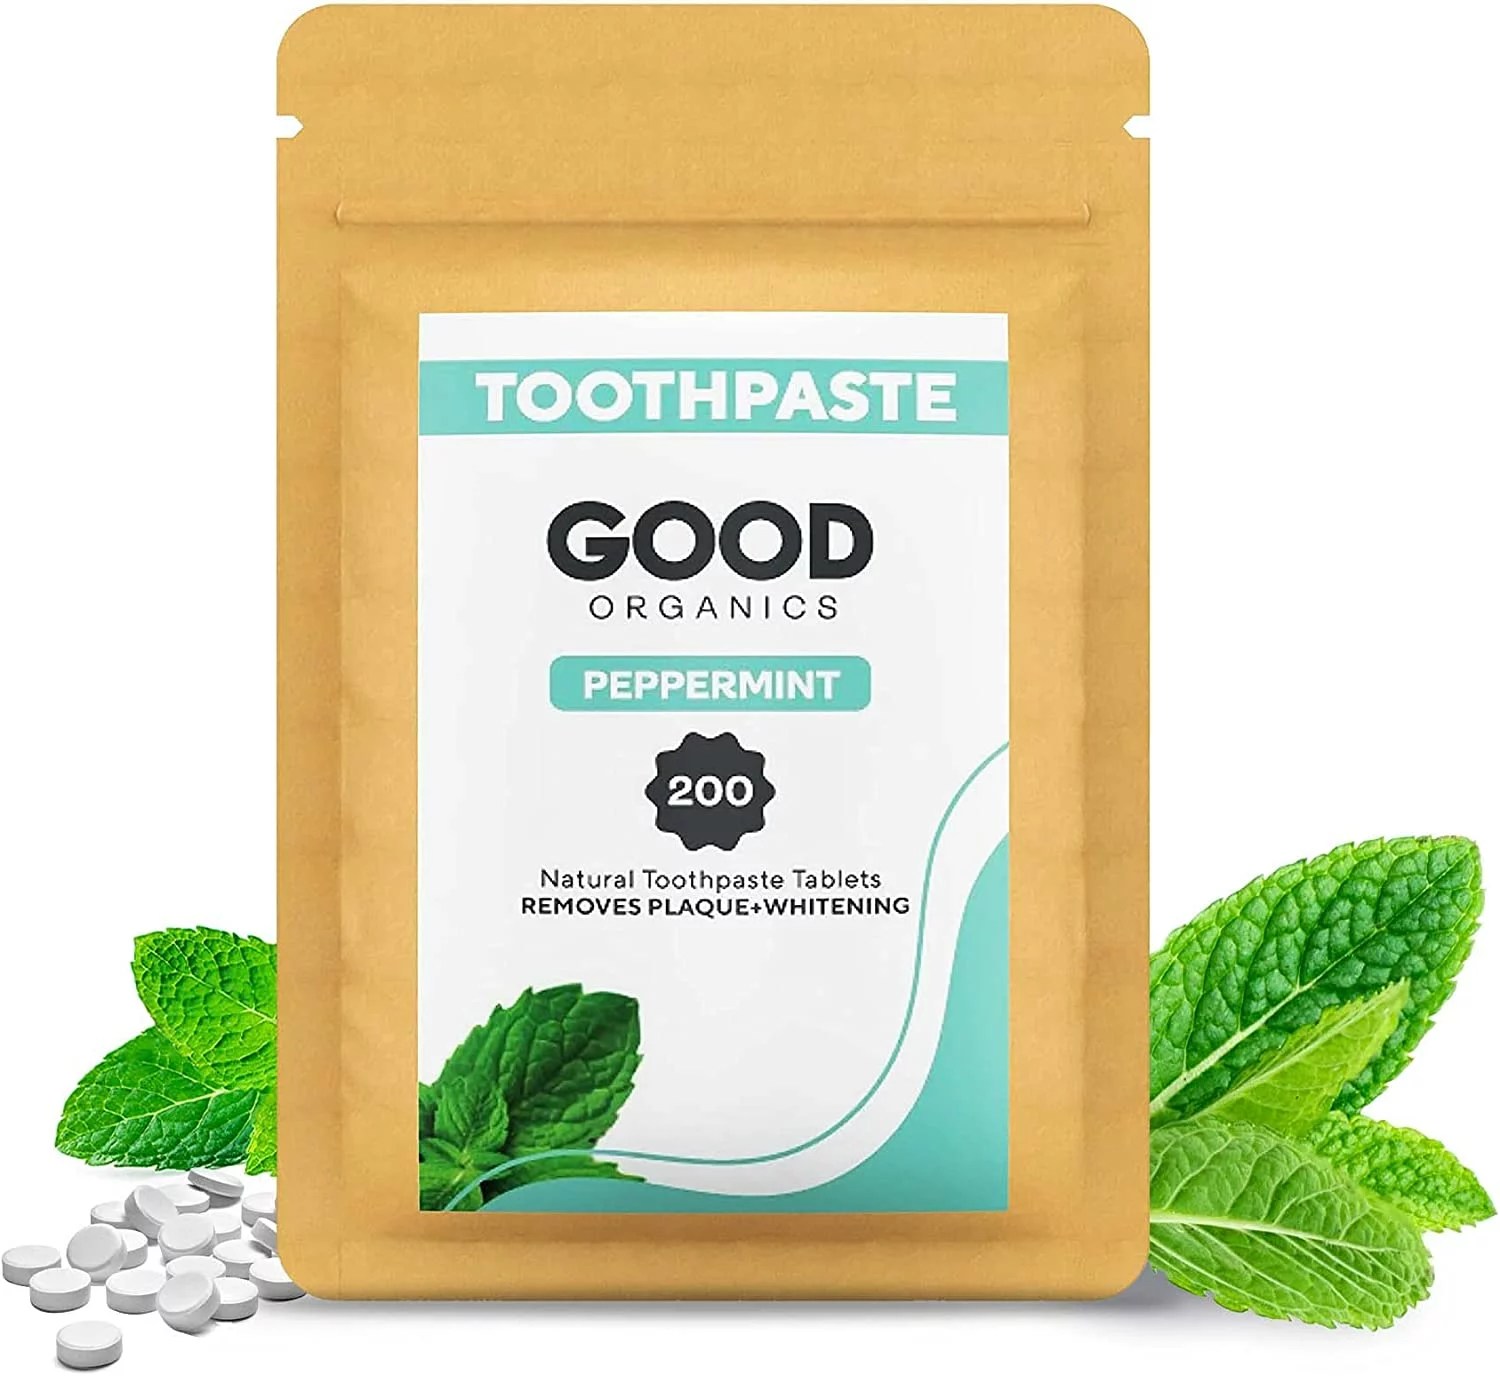 Good Organics Toothpaste Tablets